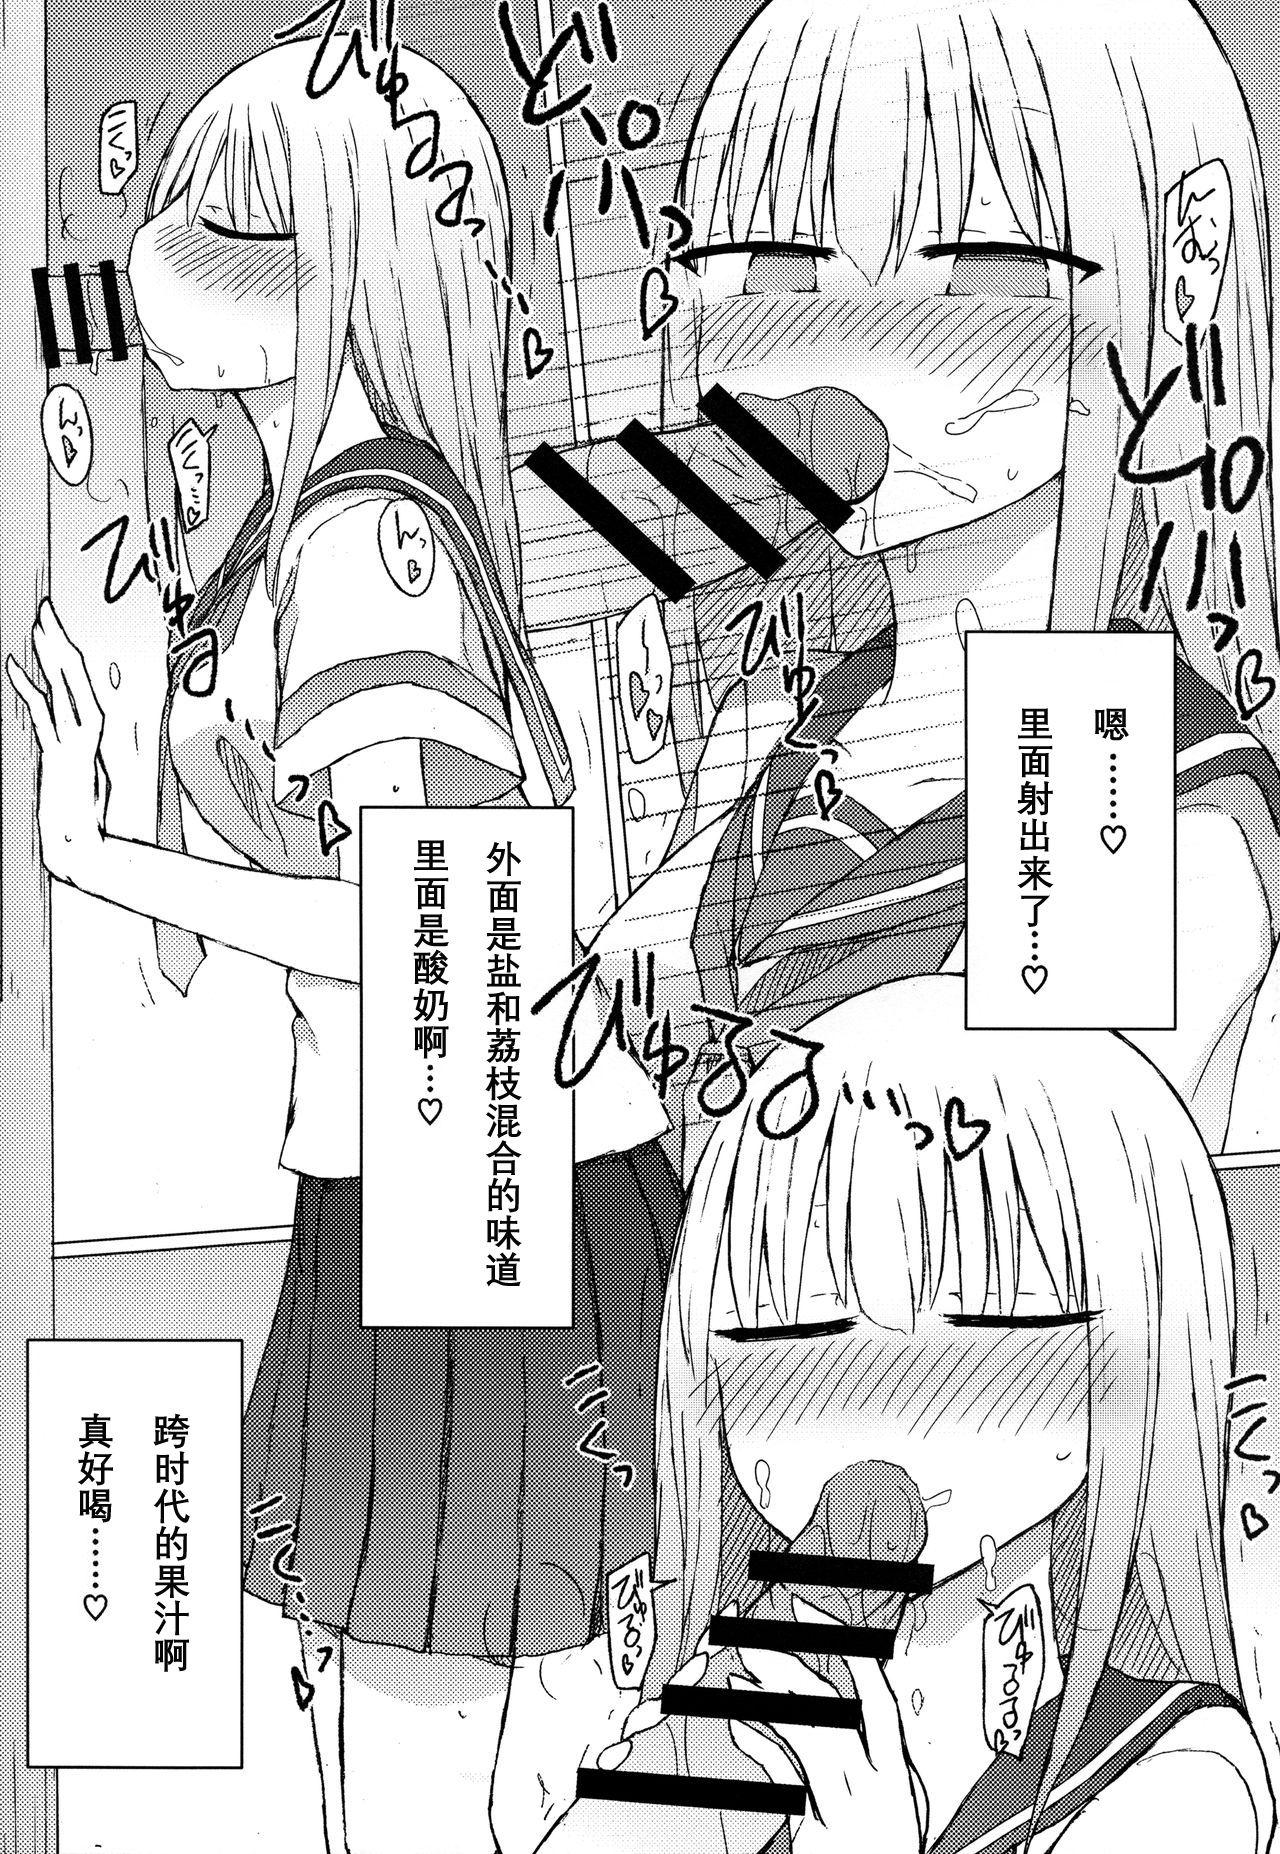 Bbc Atsui kara Jihanki de Juice o Kaou to Shitara Chinchin Igai Urikireteta. - Original Gay Friend - Page 10